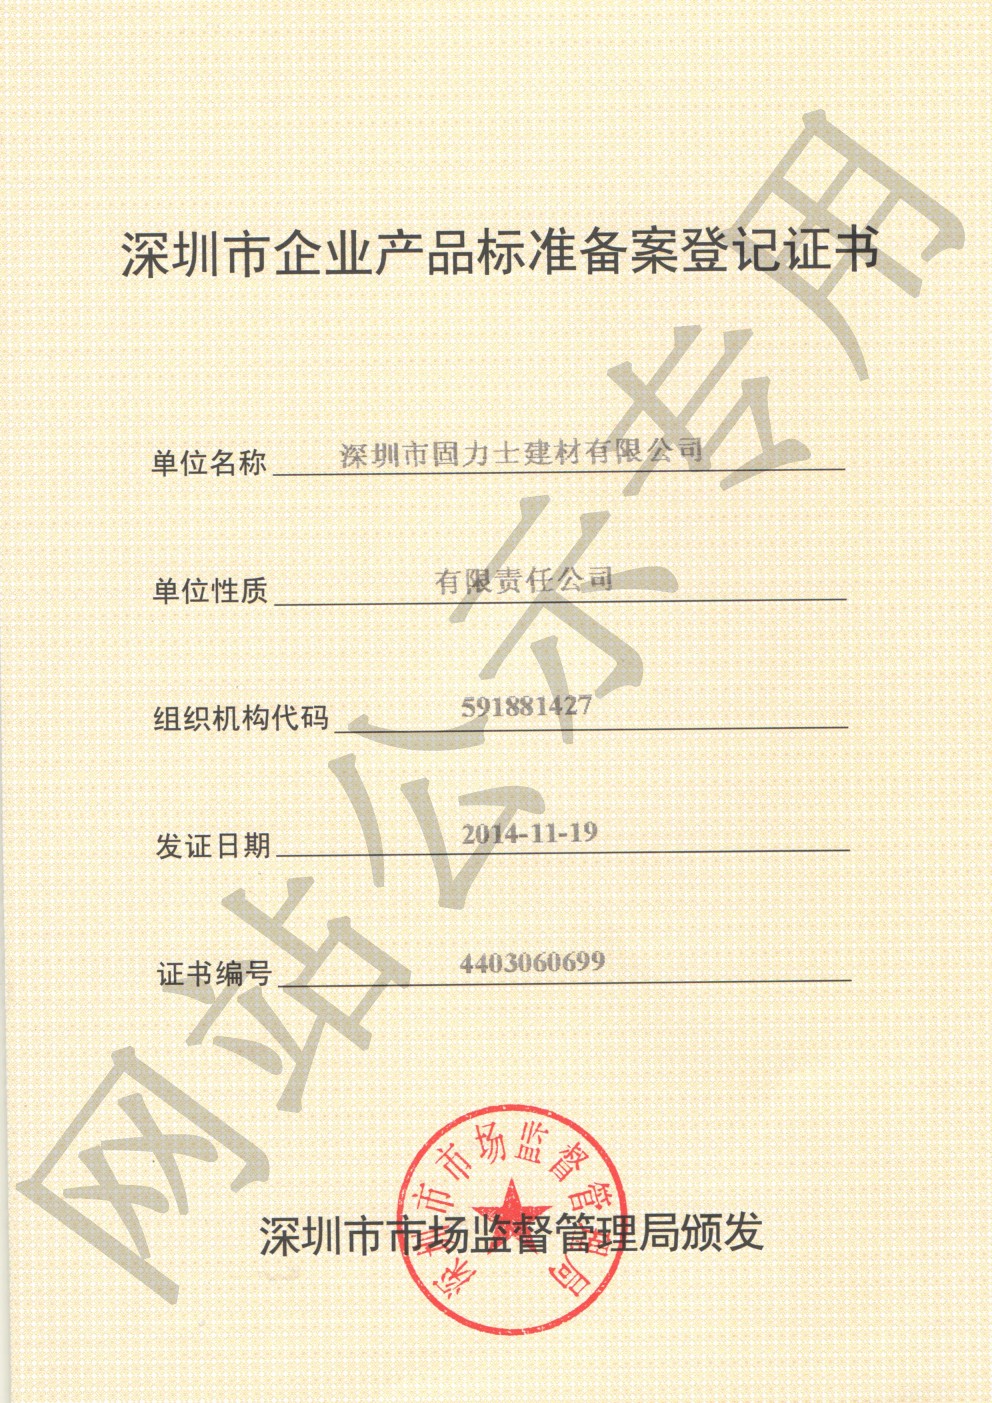 萨尔图企业产品标准登记证书